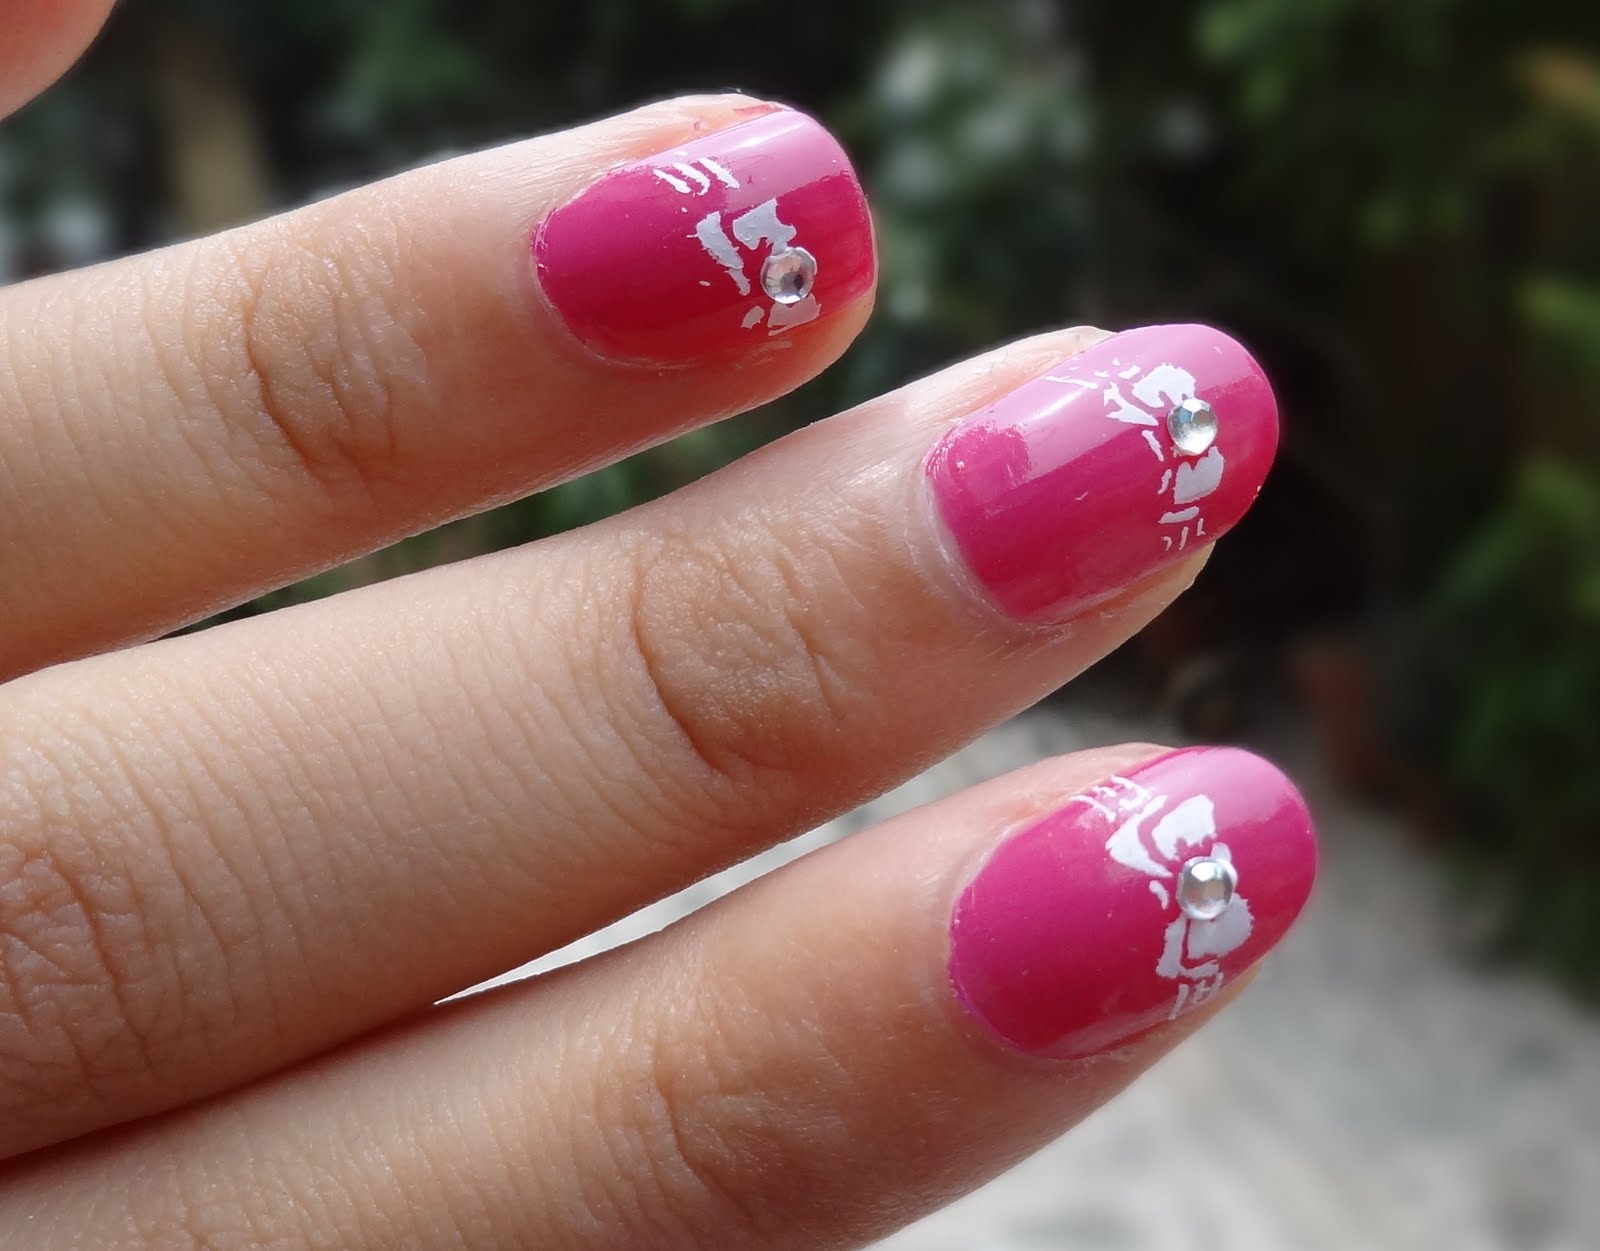 nail art design using stamping